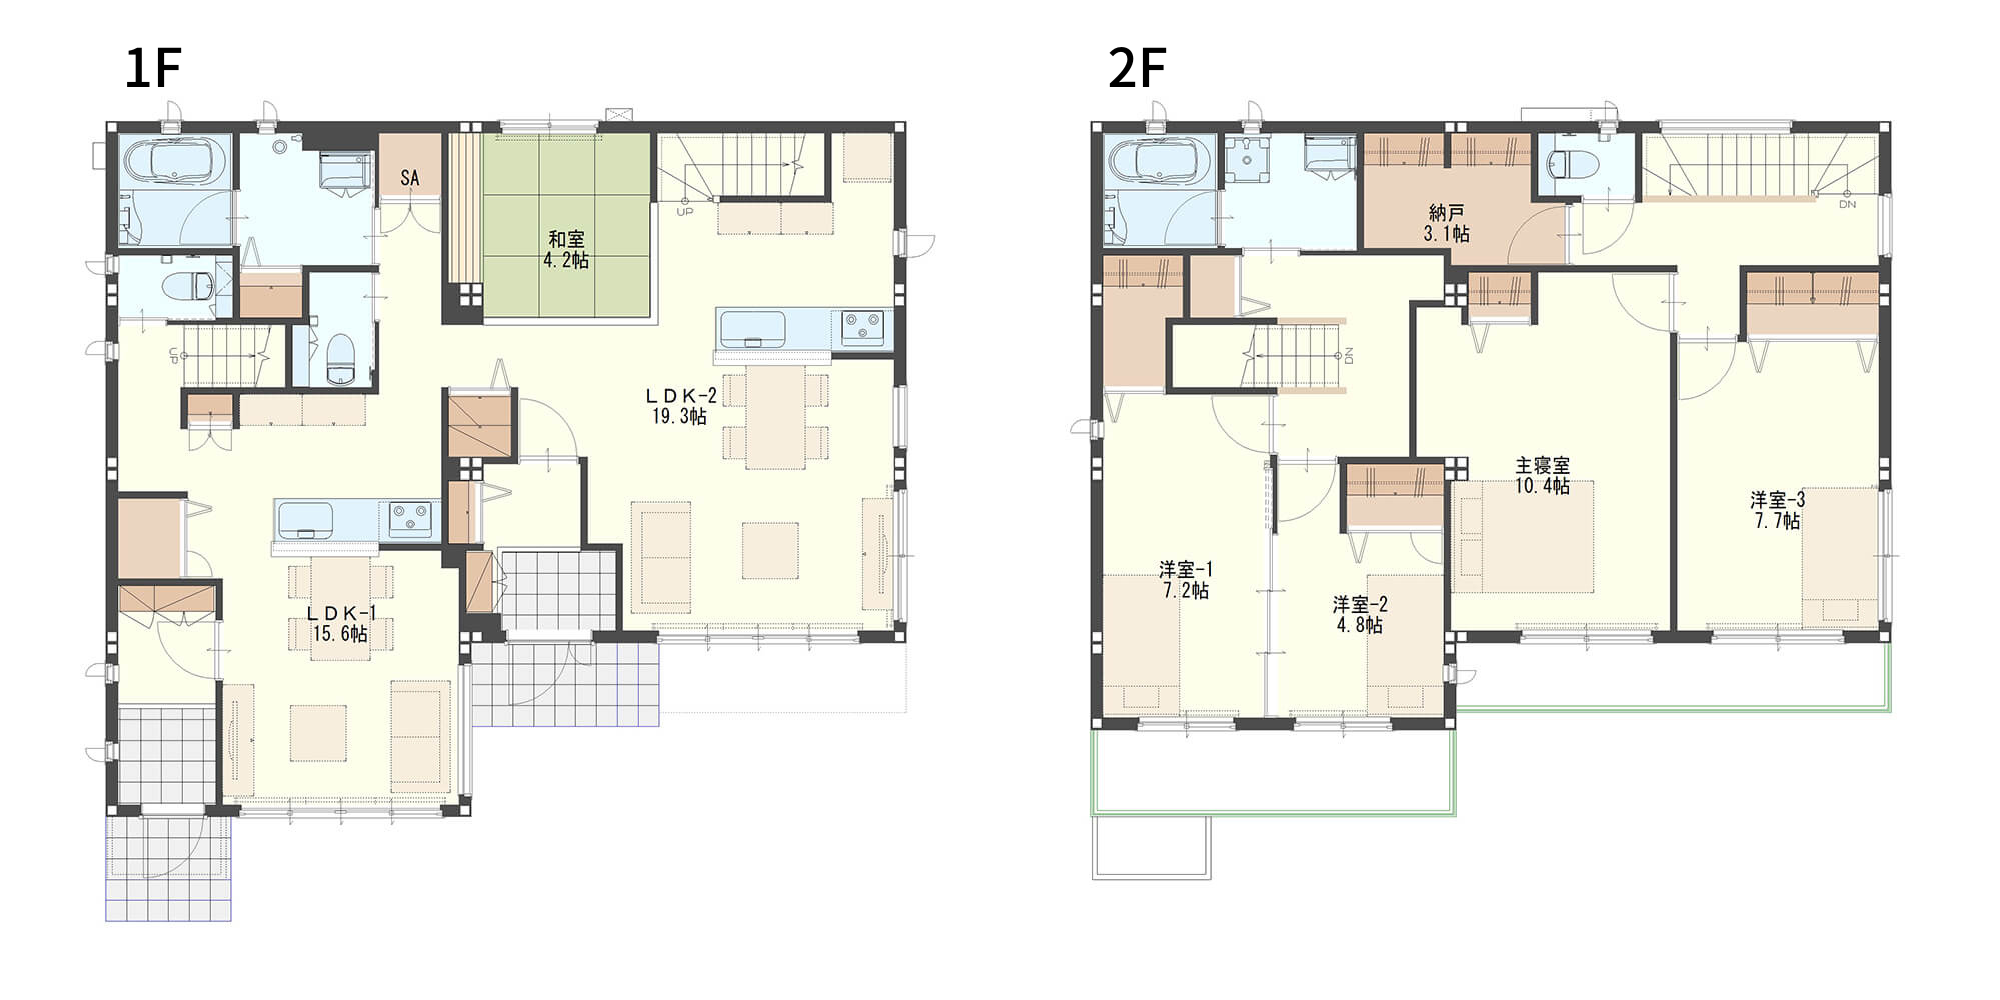 【55.9坪】団らんスペースとプライバシースペースを上下階でゾーン分けした二世帯住宅の間取り図